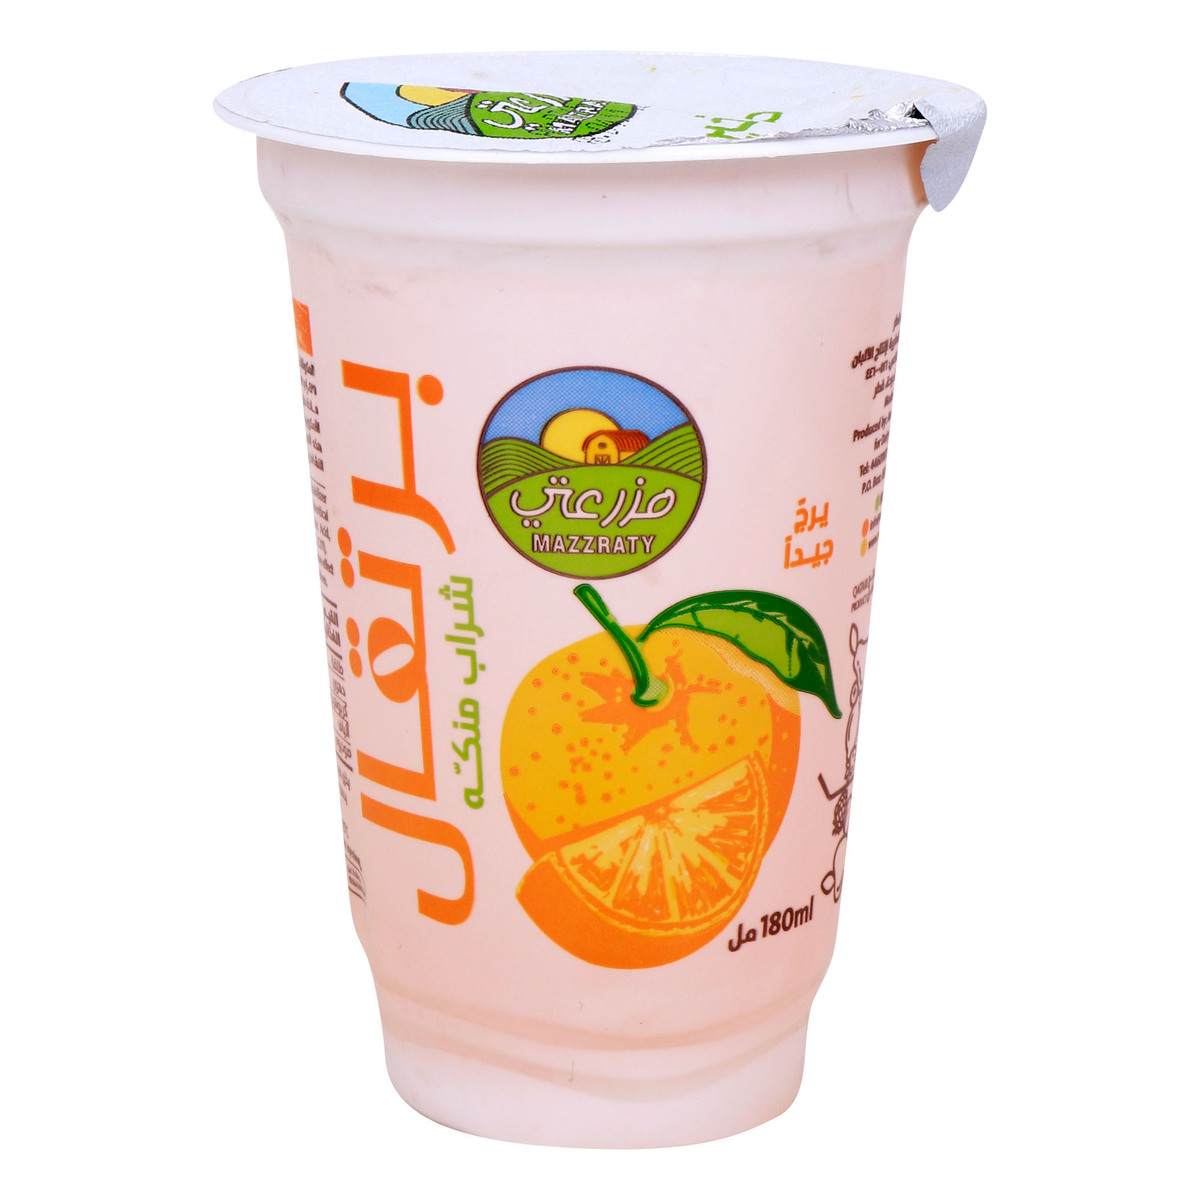 Mazzraty Orange Flavoured Drink Cup, 180 ml